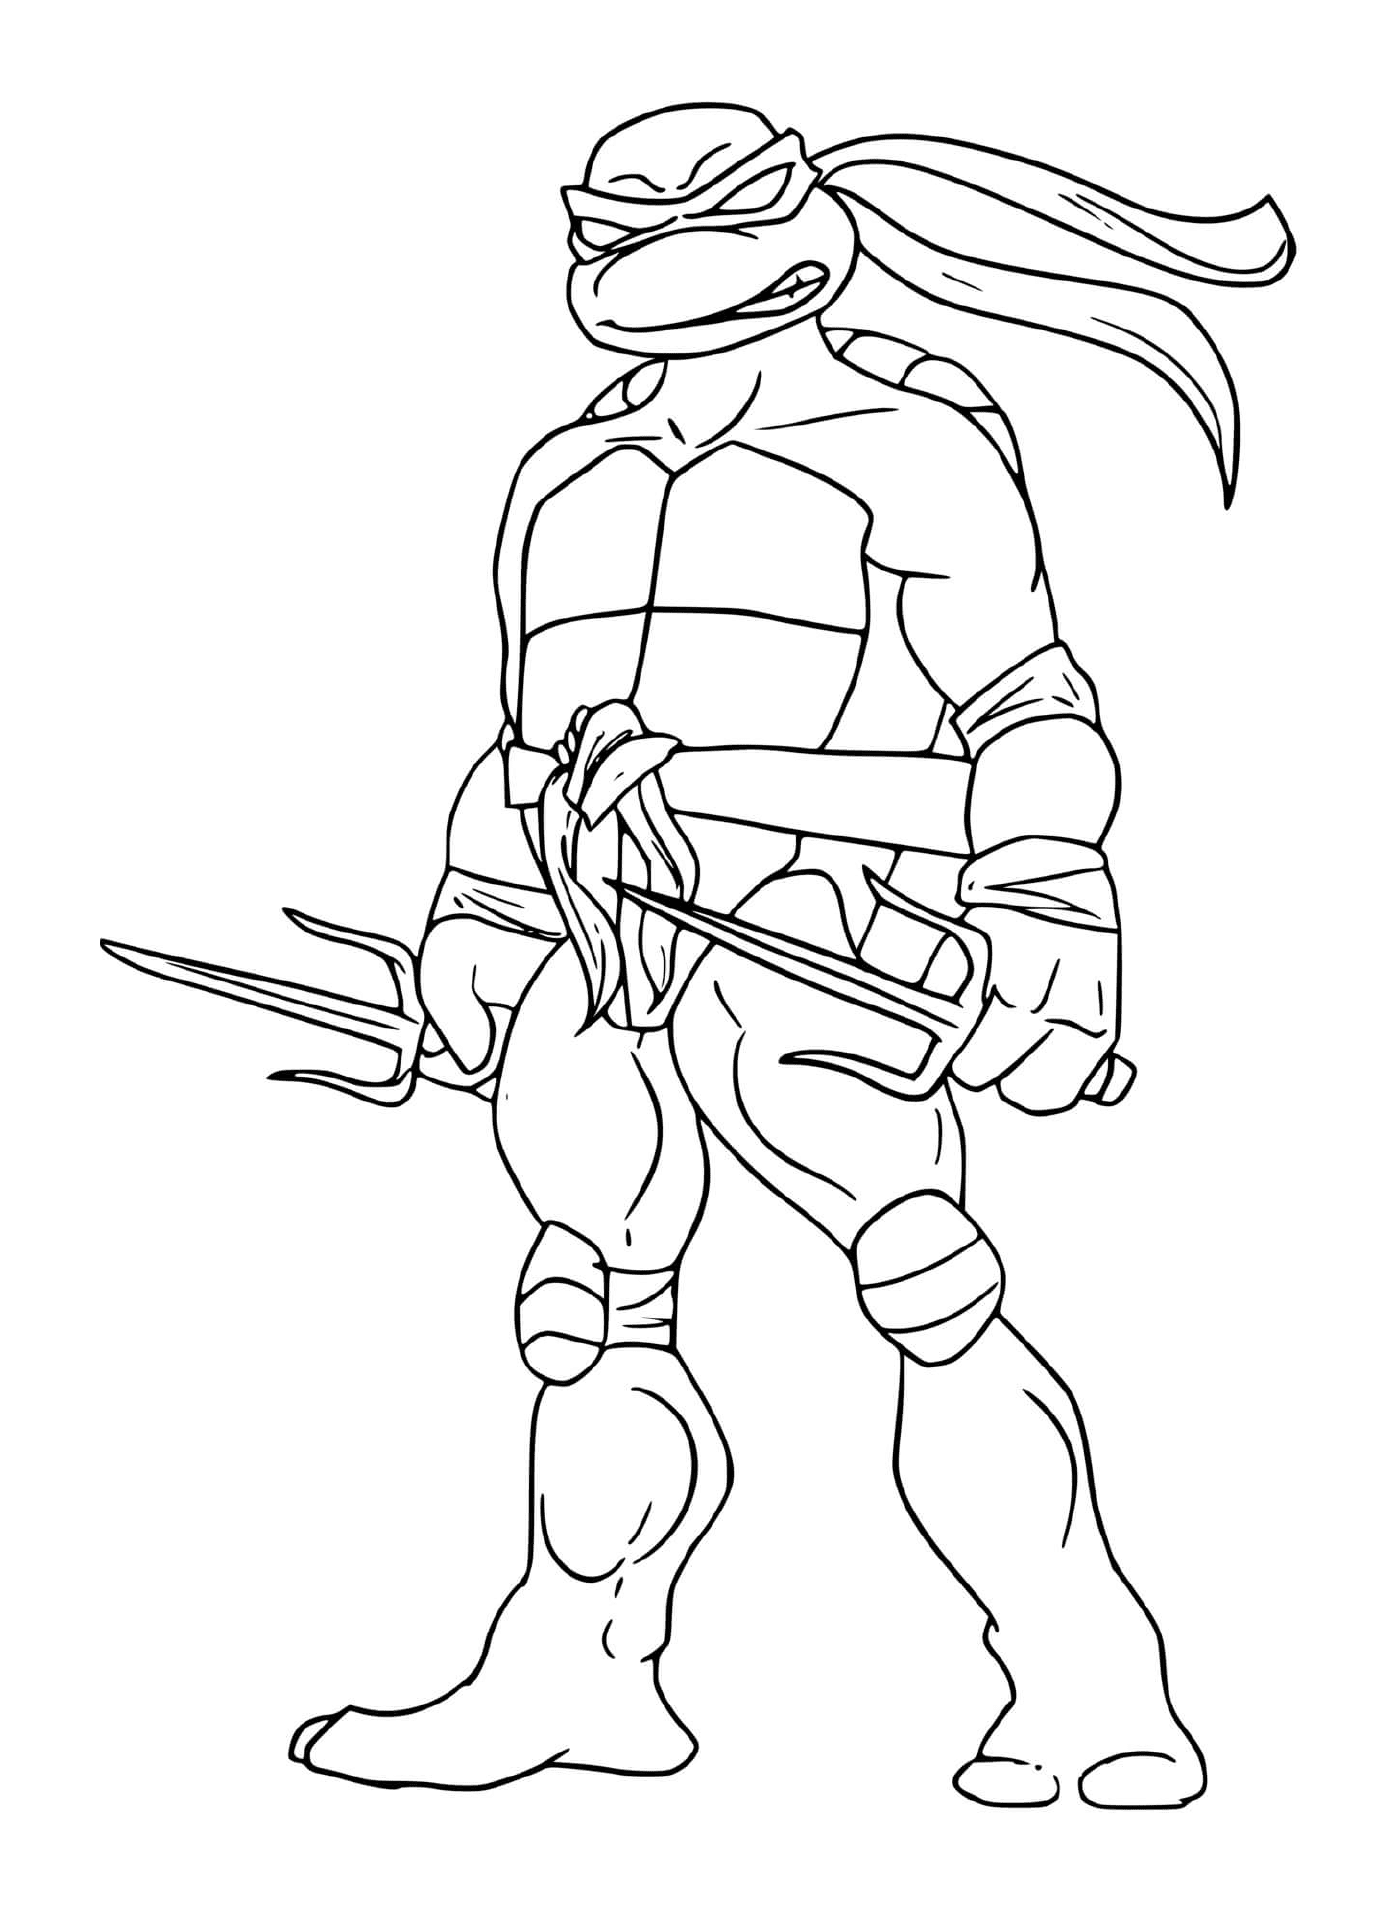  Una tortuga ninja 